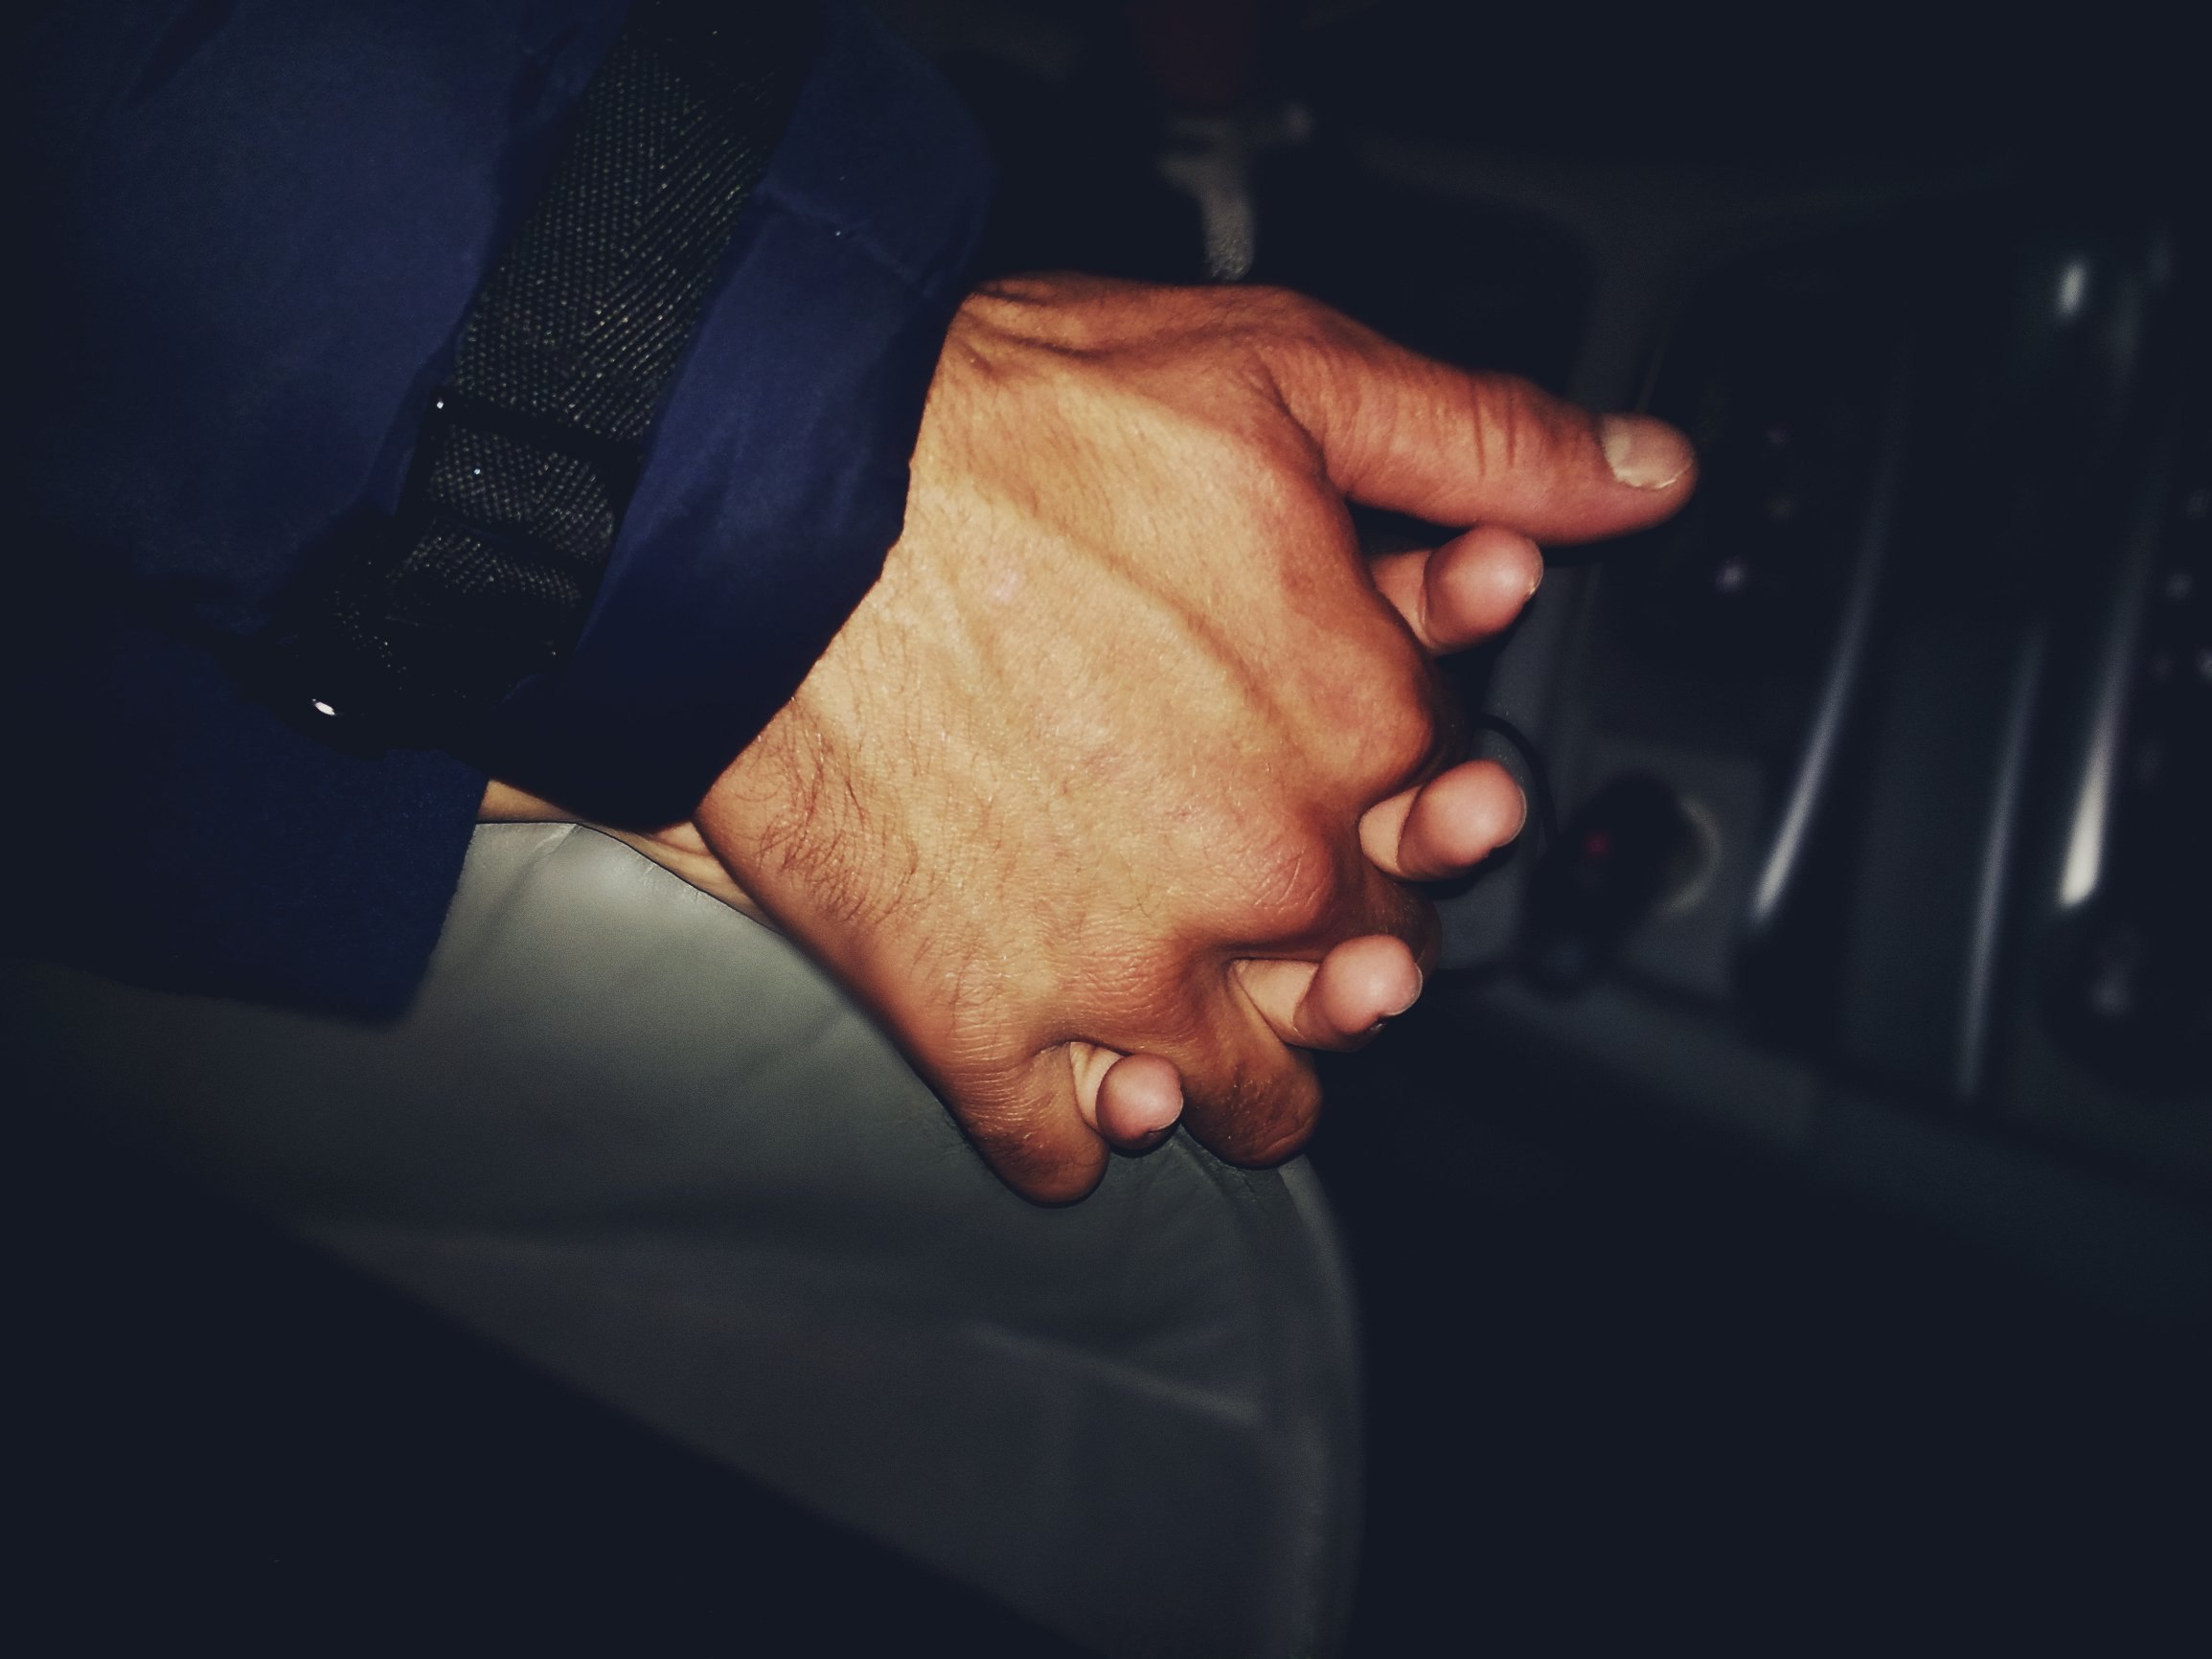 Руки влюбленных вместе в машине крупным планом | Премиум Фото